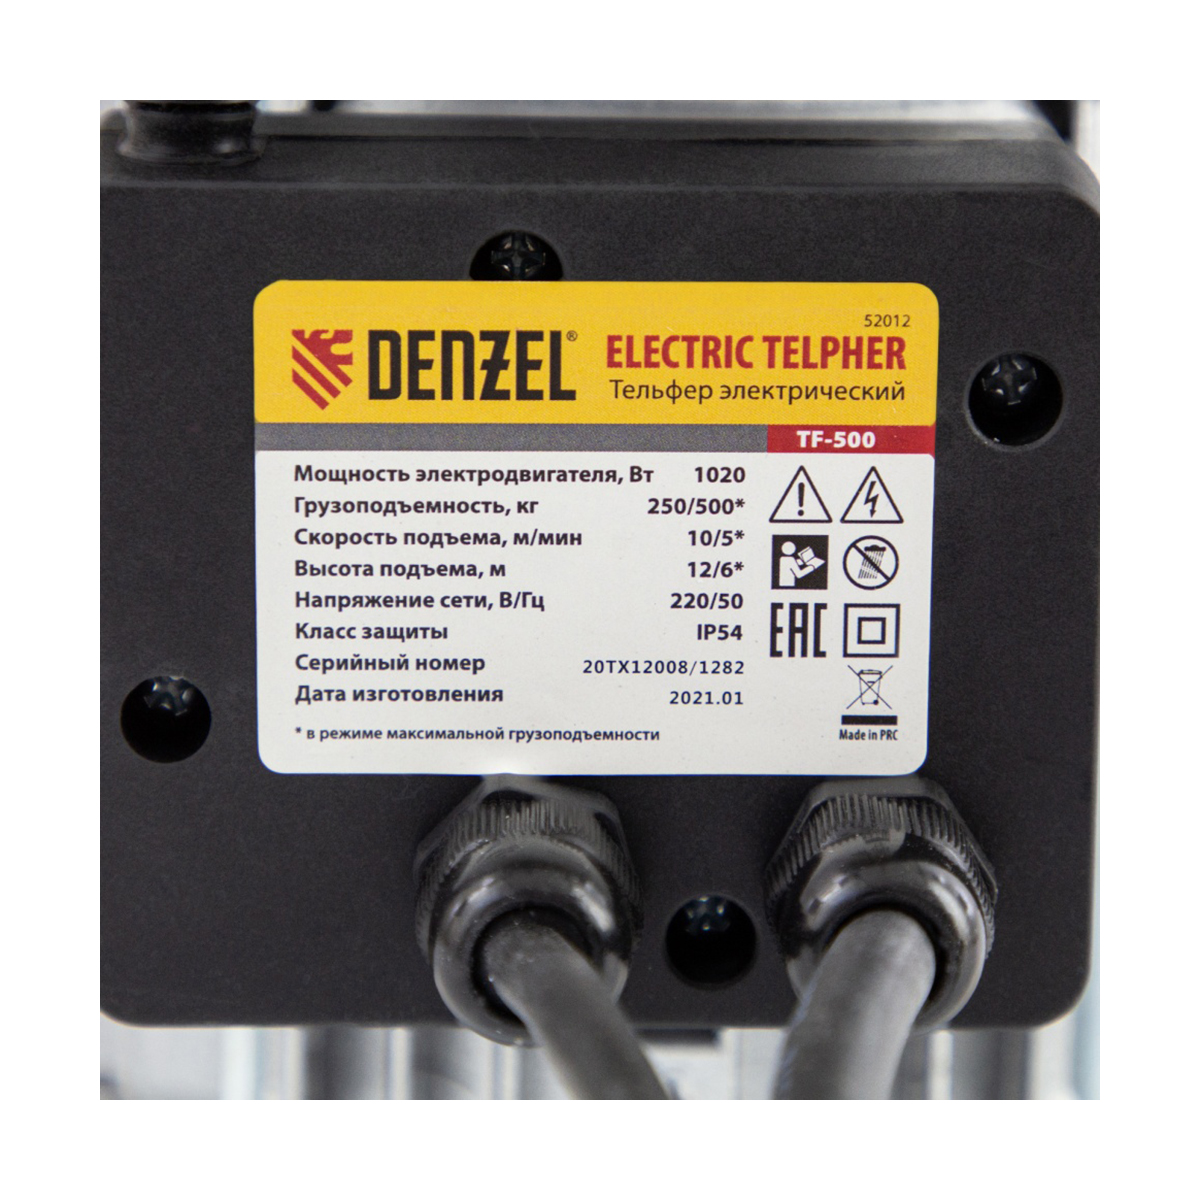 Тельфер электрический tf-500  1020 вт, высота подъема 12 м (1/2) "denzel"